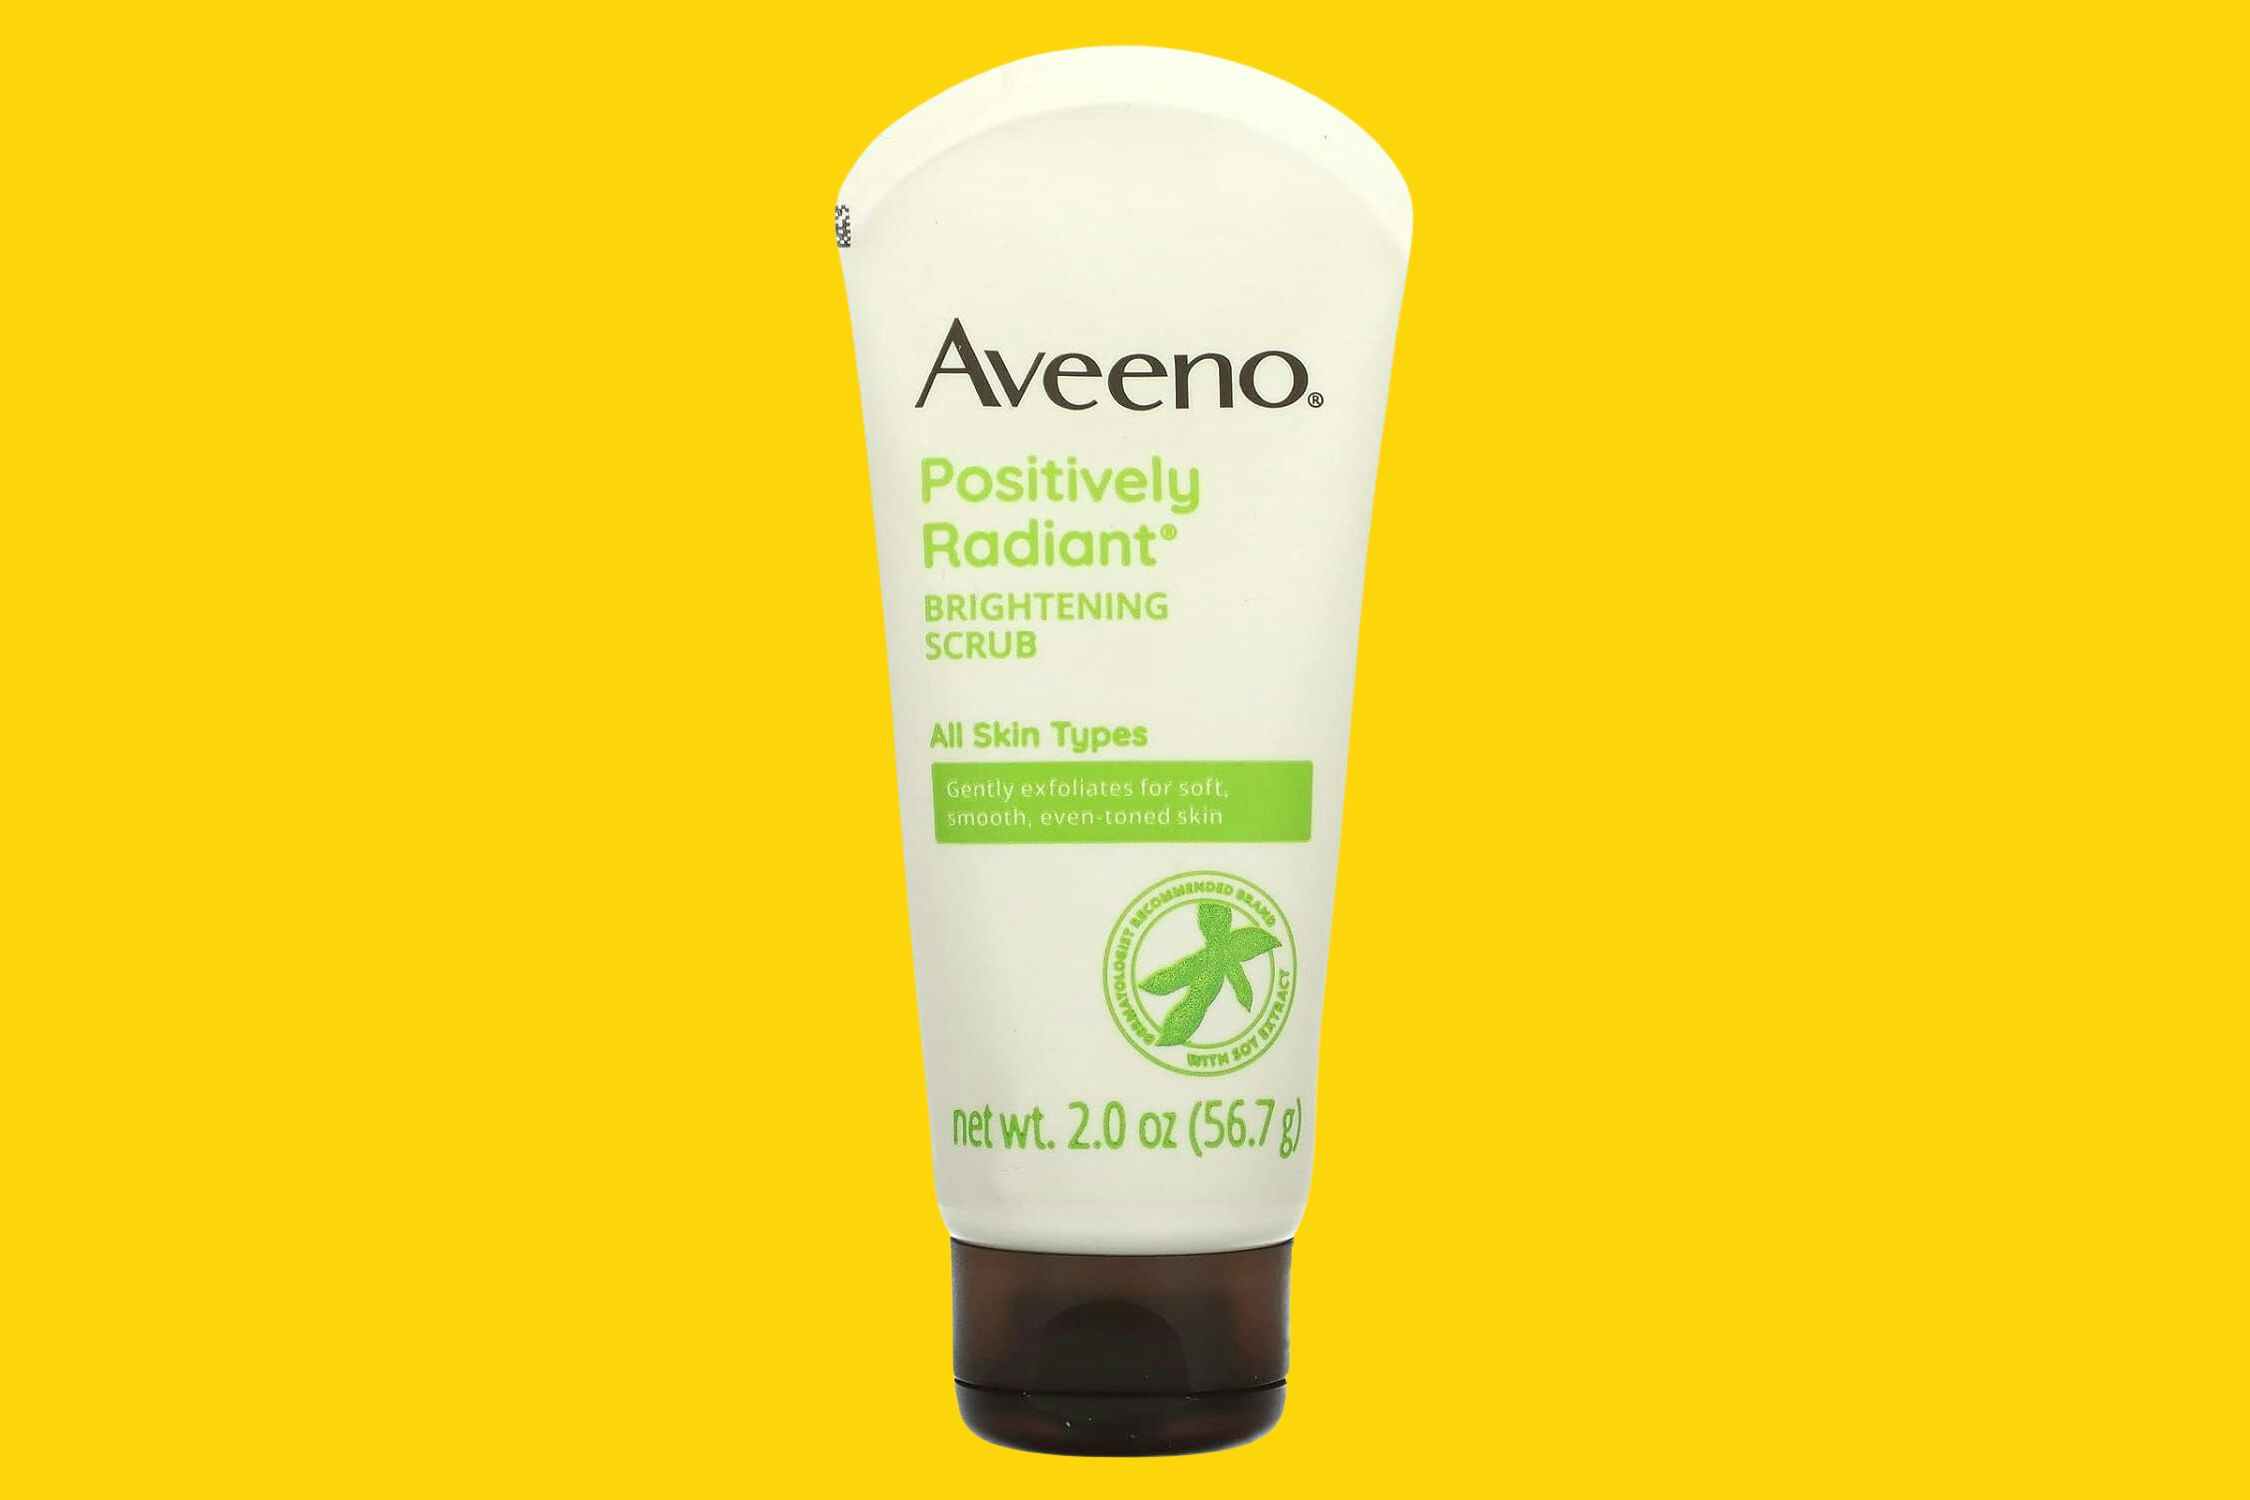 Aveeno Facial Scrub, as Low as $2.12 on Amazon 